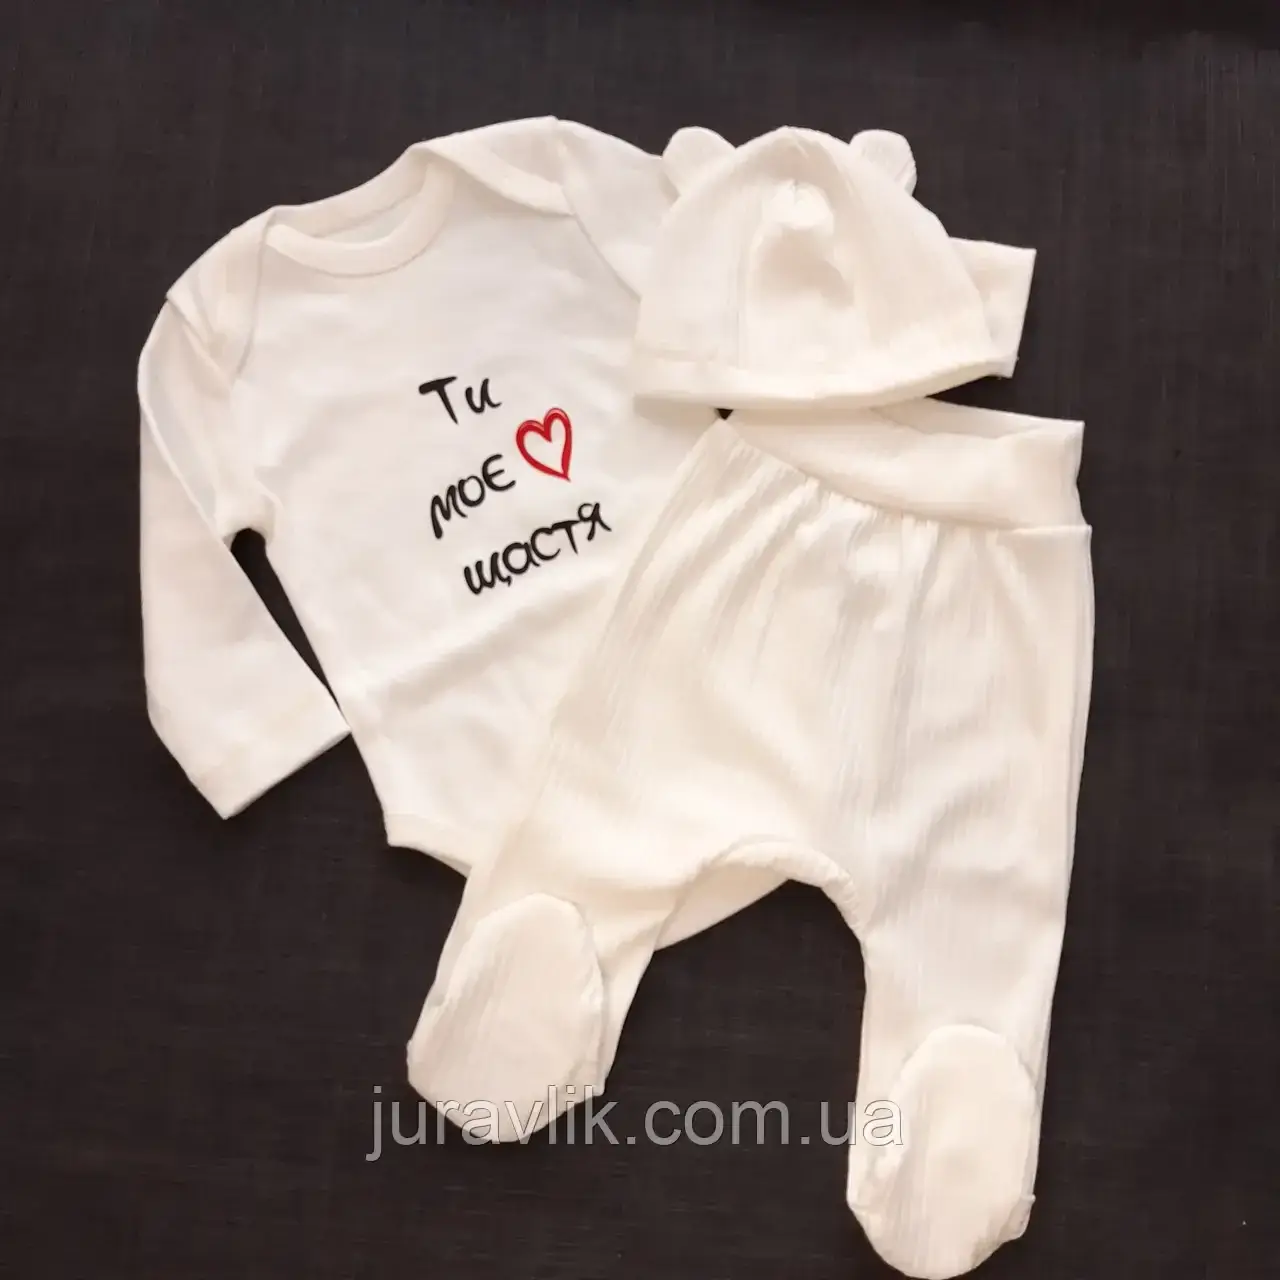 Святковий костюмчик для новонароджених Молочний 56,62 рост Костюм на виписку  Комплект для новонароджених